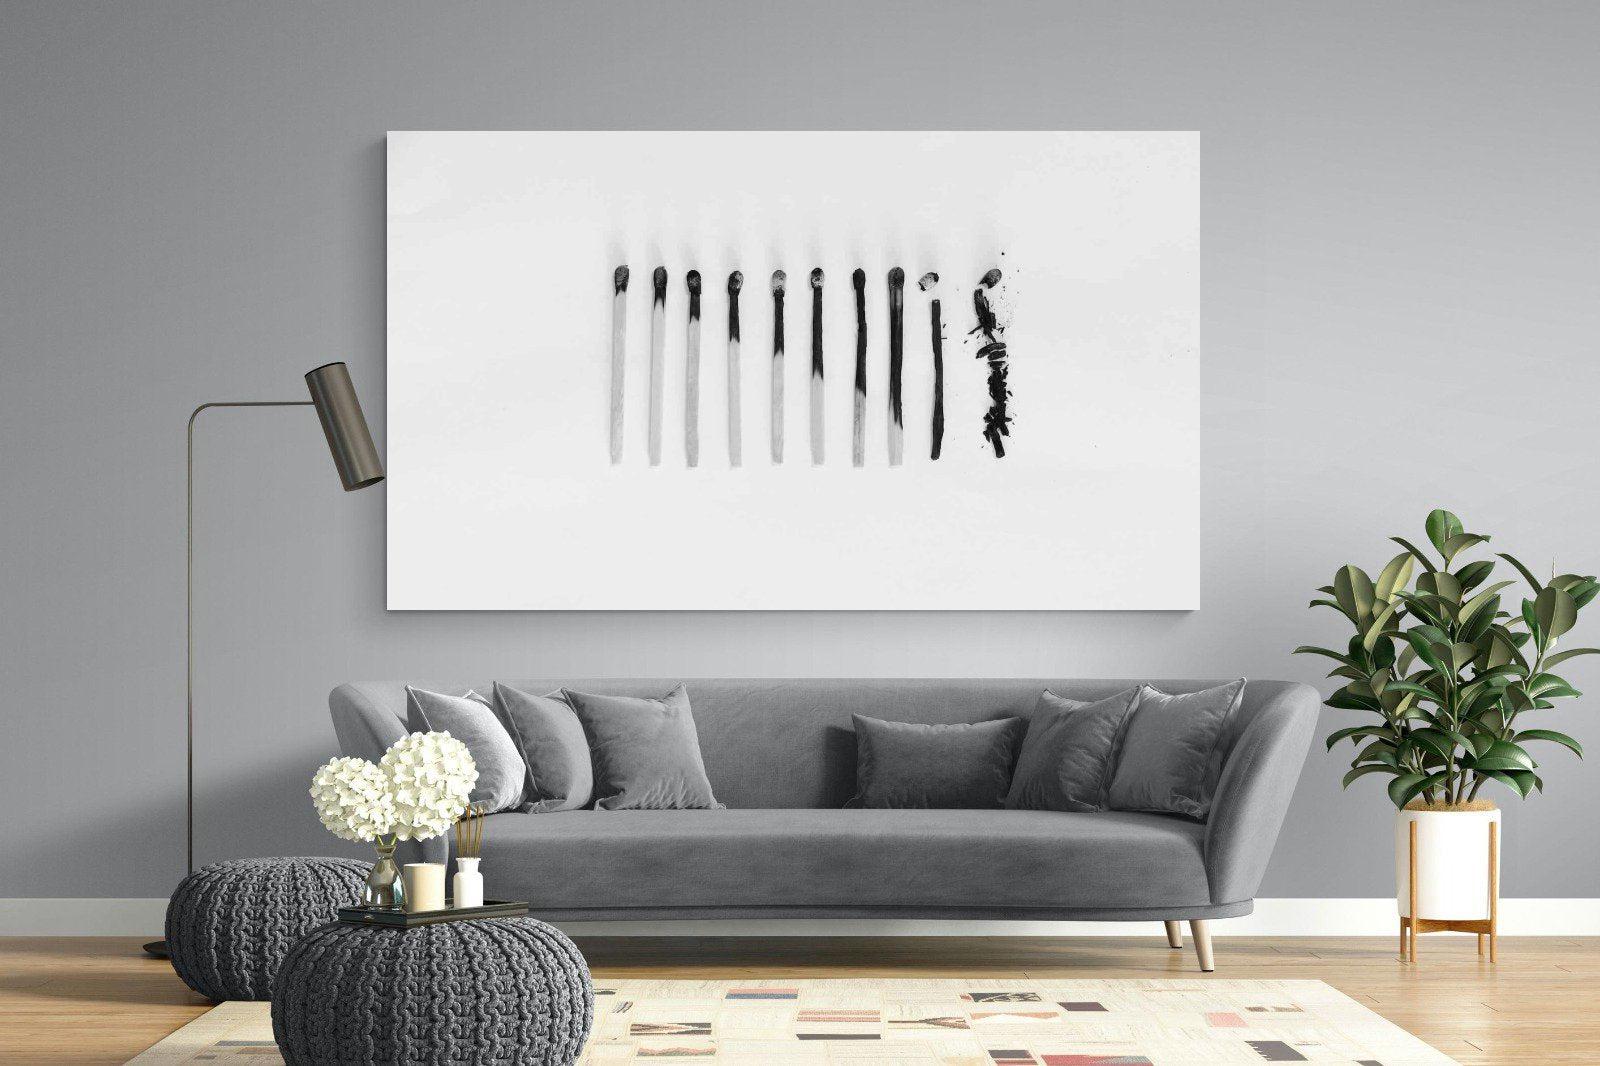 Matchsticks-Wall_Art-220 x 130cm-Mounted Canvas-No Frame-Pixalot